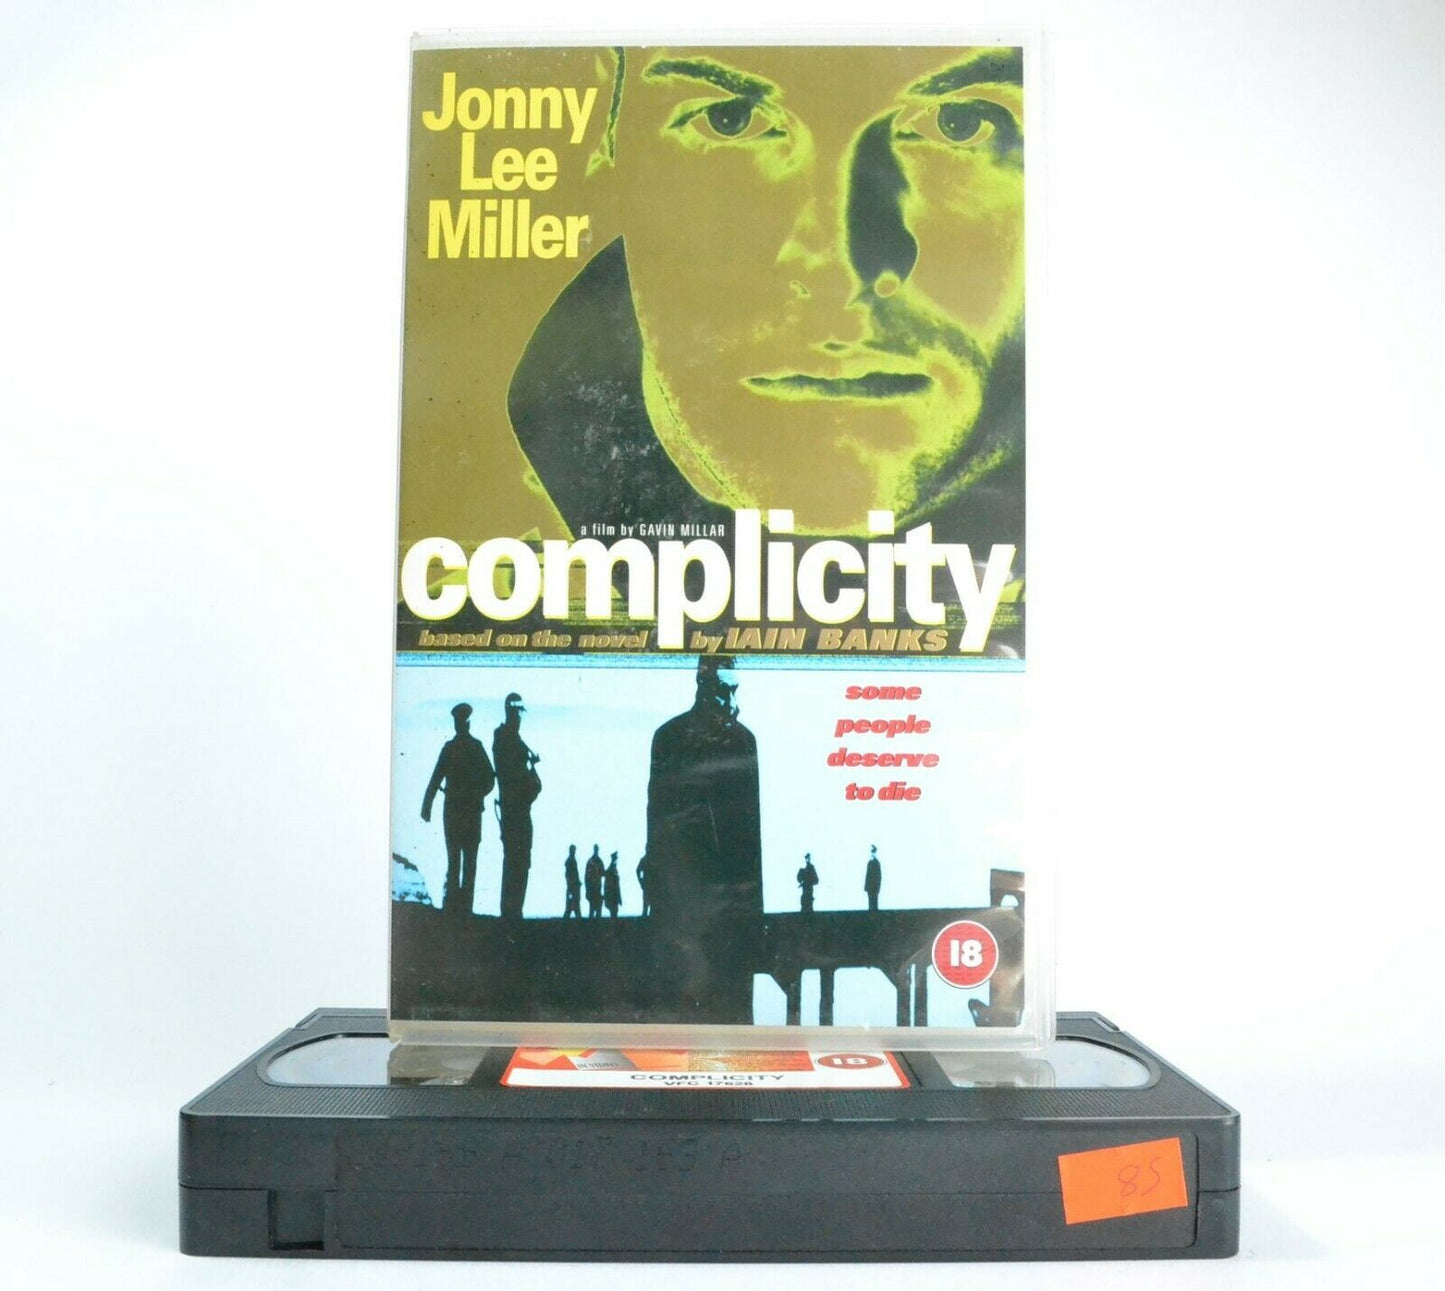 Complicity: Based On I.Banks Novel - Large Box - Drama - Jonny Lee Miller - VHS-